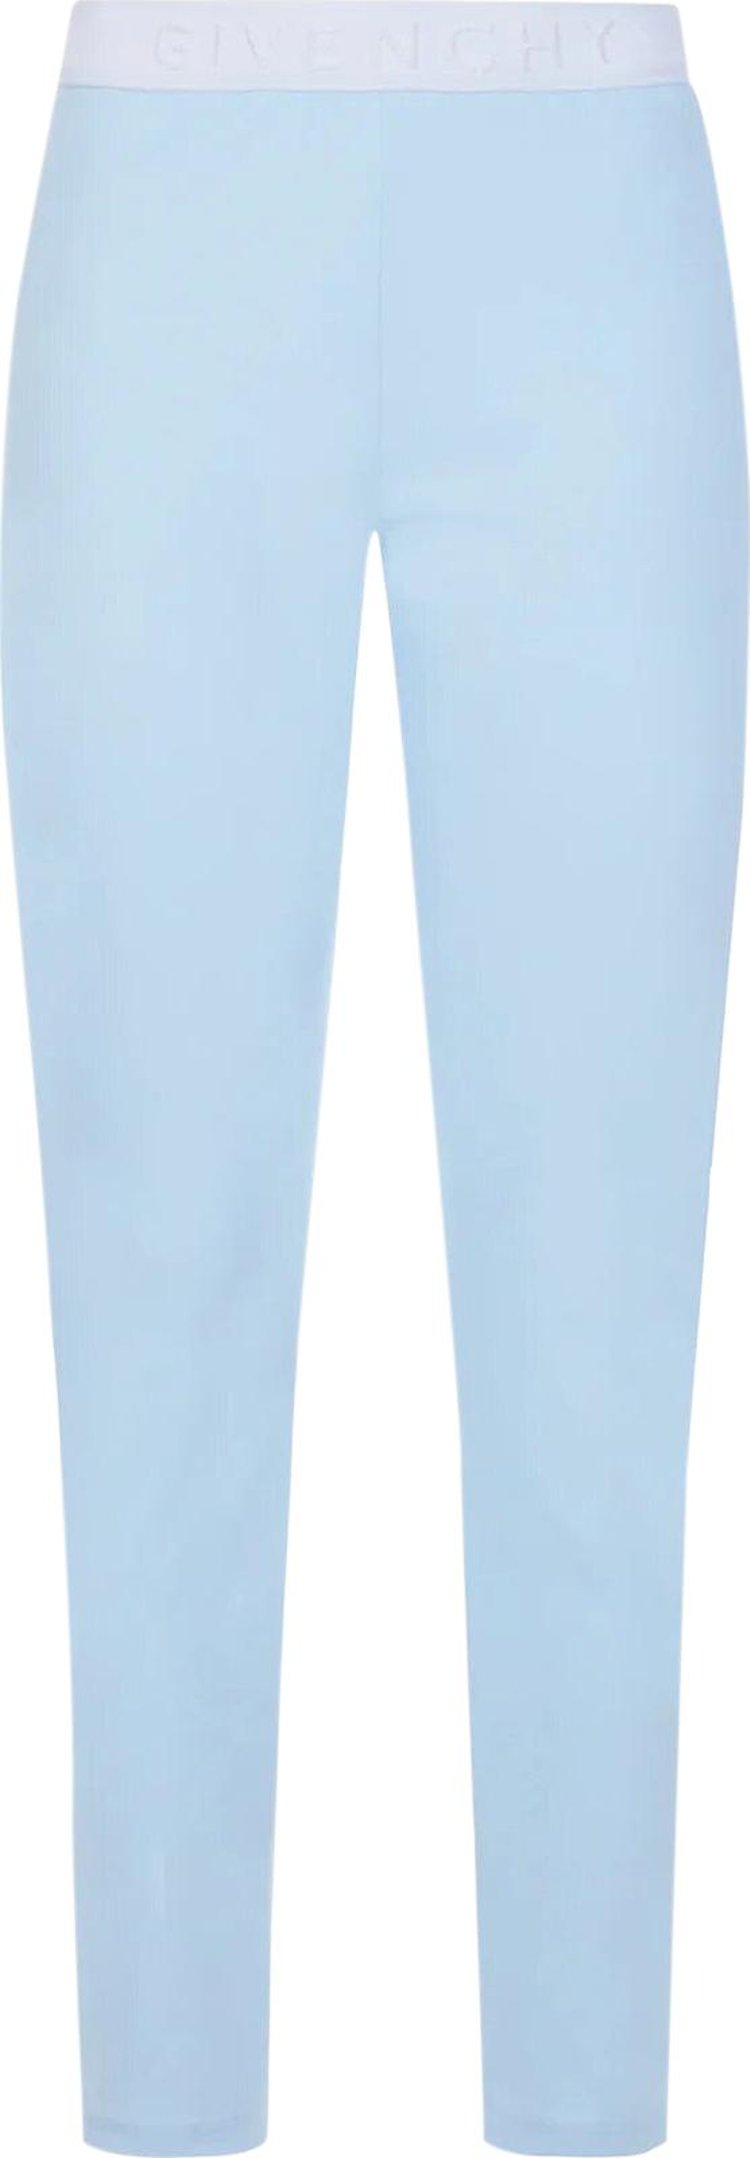 Buy Givenchy Jacquard Waistband Leggings 'Light Blue' - BW50TK3096 458